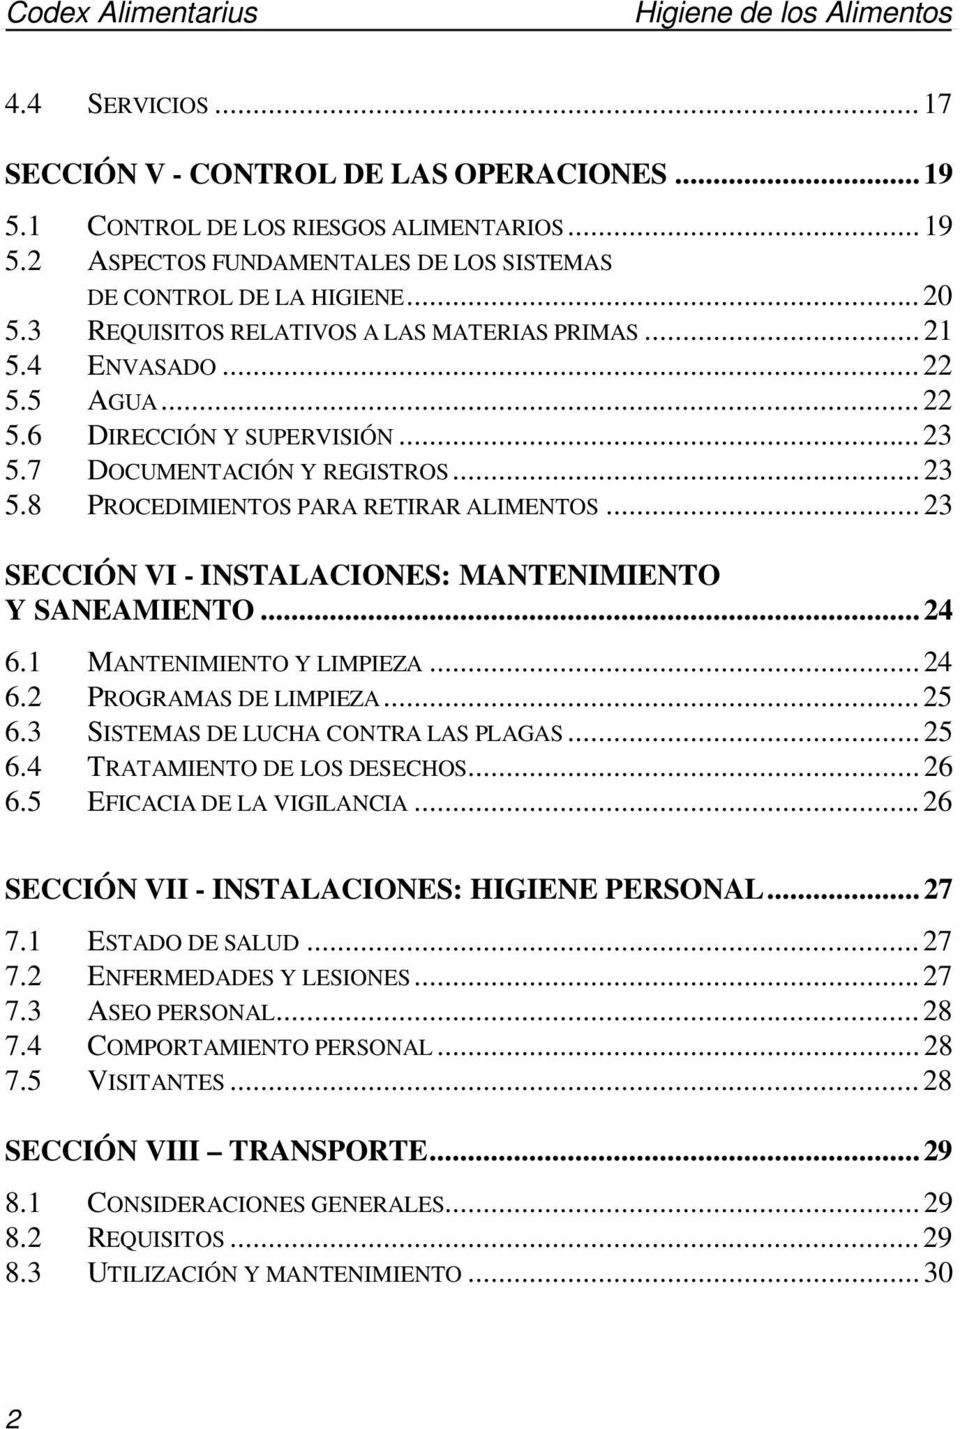 ..23 SECCIÓN VI - INSTALACIONES: MANTENIMIENTO Y SANEAMIENTO...24 6.1 MANTENIMIENTO Y LIMPIEZA...24 6.2 PROGRAMAS DE LIMPIEZA...25 6.3 SISTEMAS DE LUCHA CONTRA LAS PLAGAS...25 6.4 TRATAMIENTO DE LOS DESECHOS.